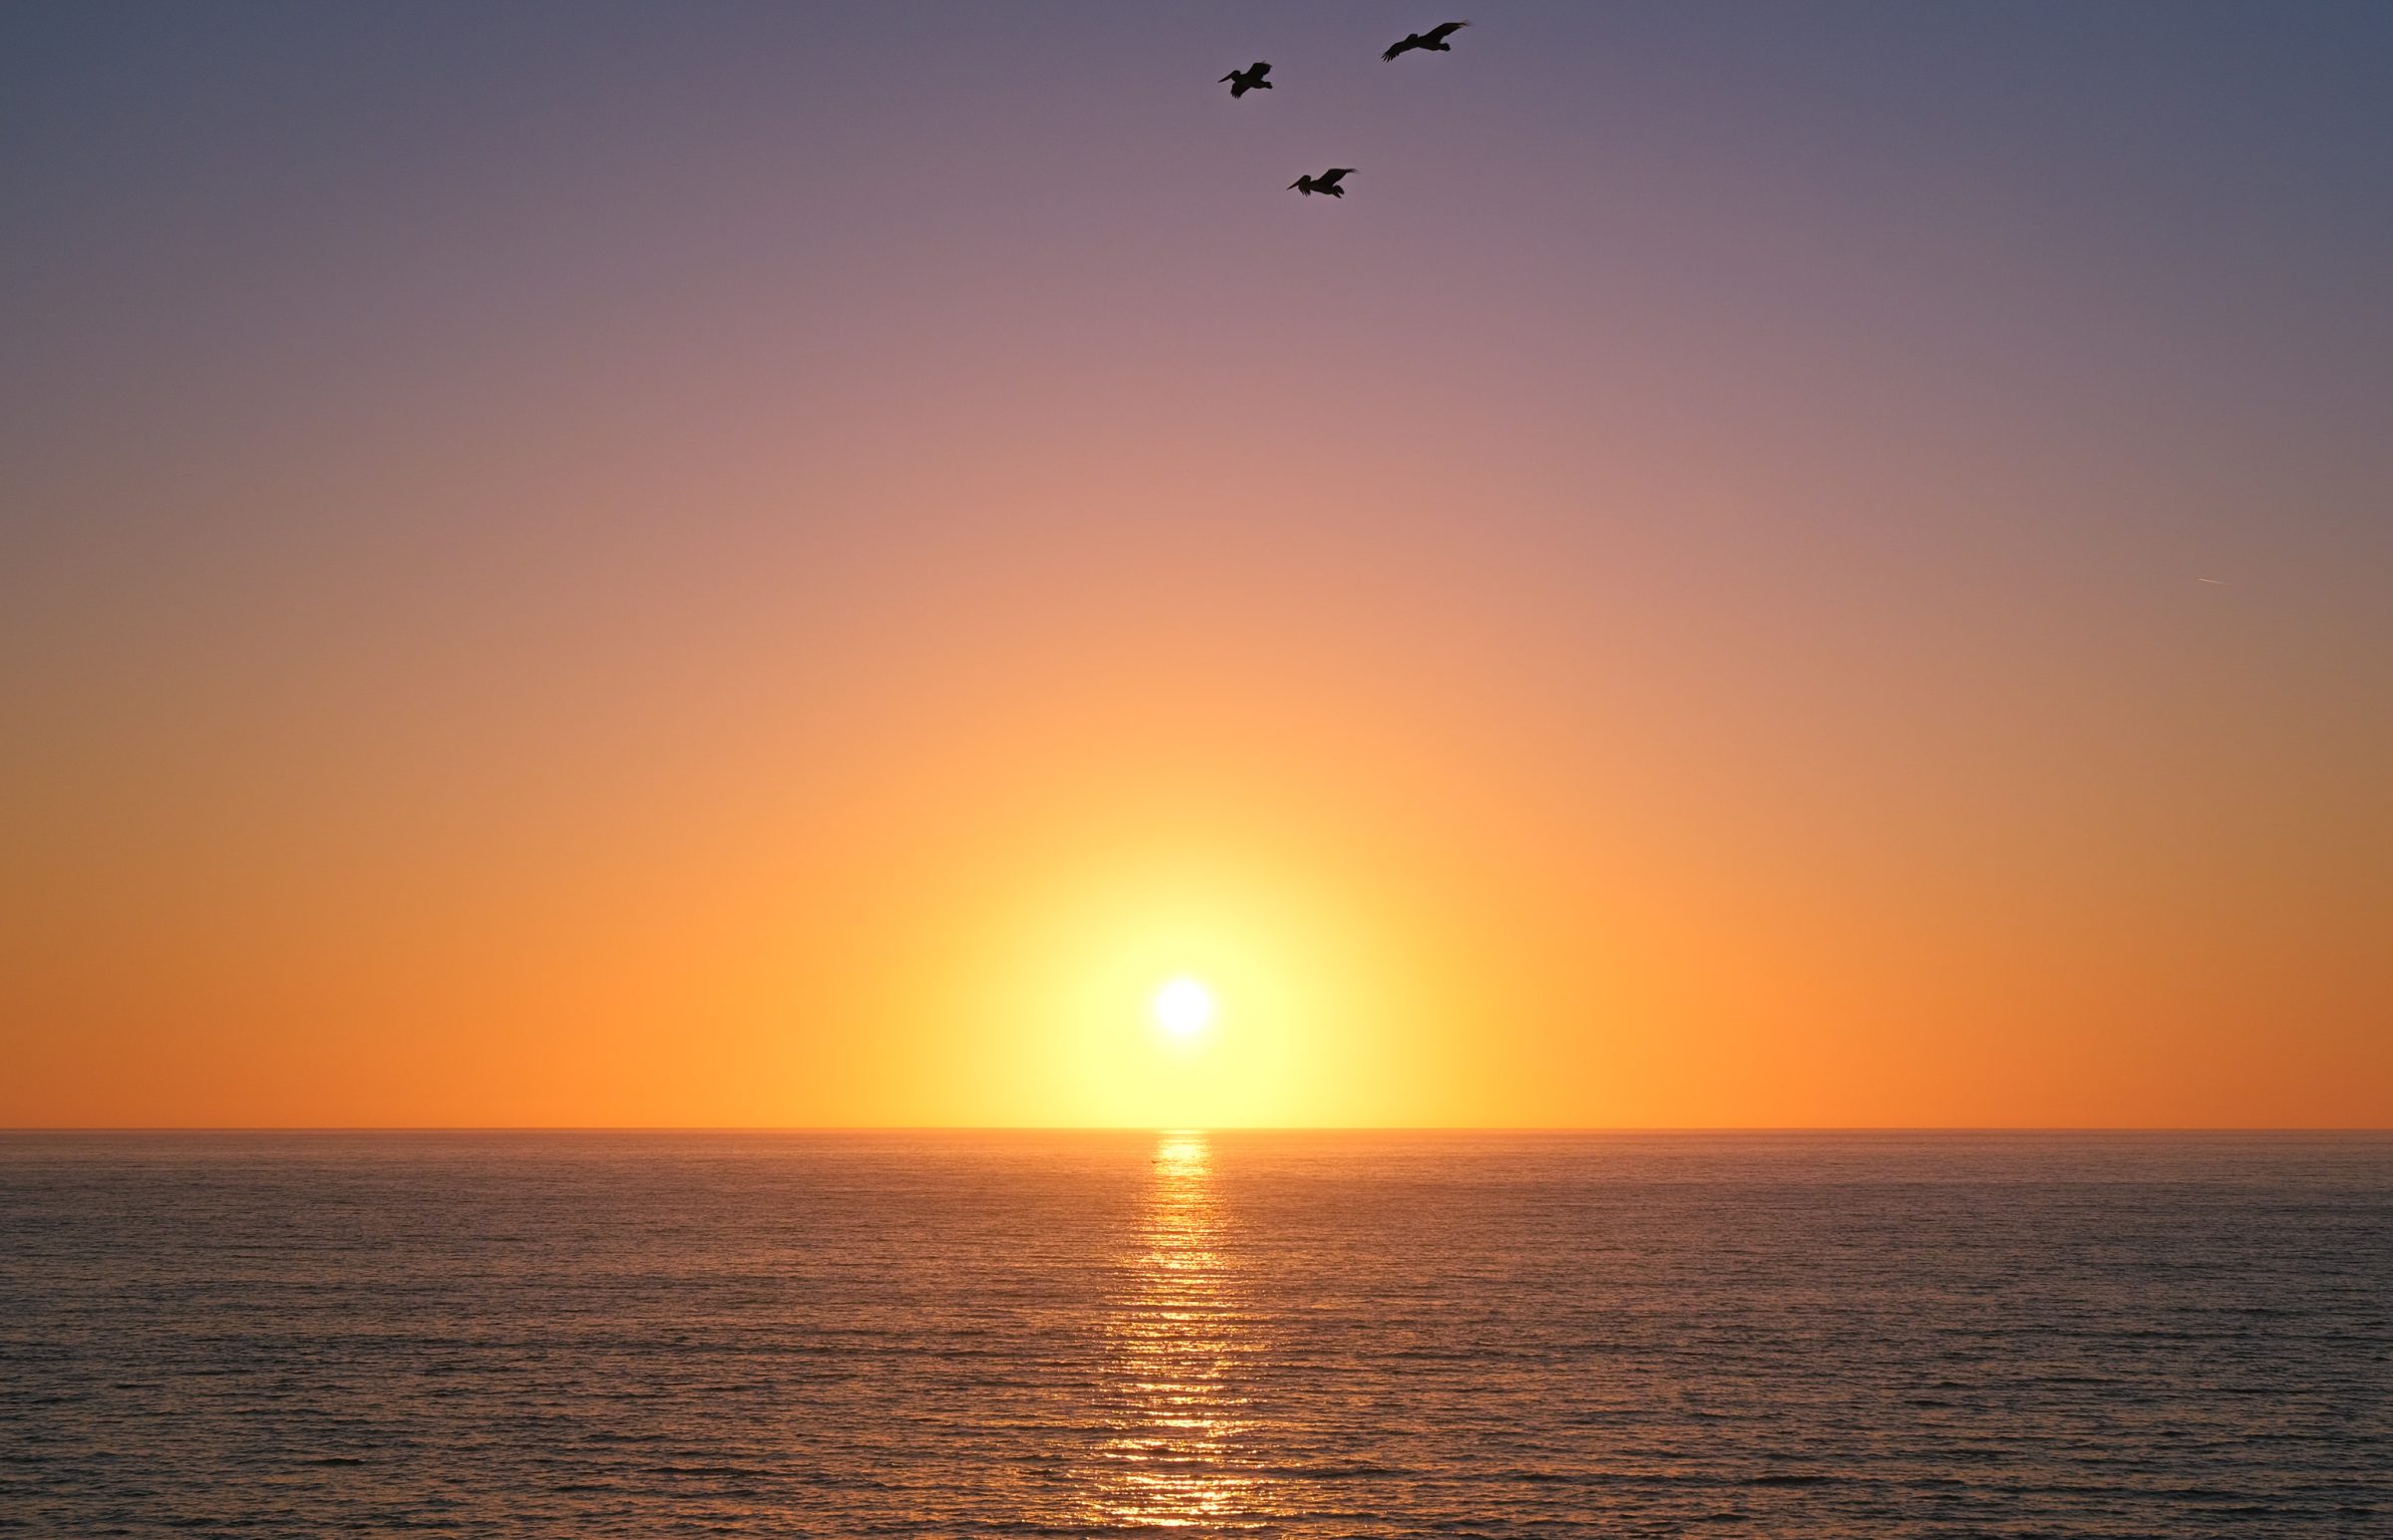 Klidné moře, zapadající slunce a nad hlavou létající pelikáni. Naprostý klid.